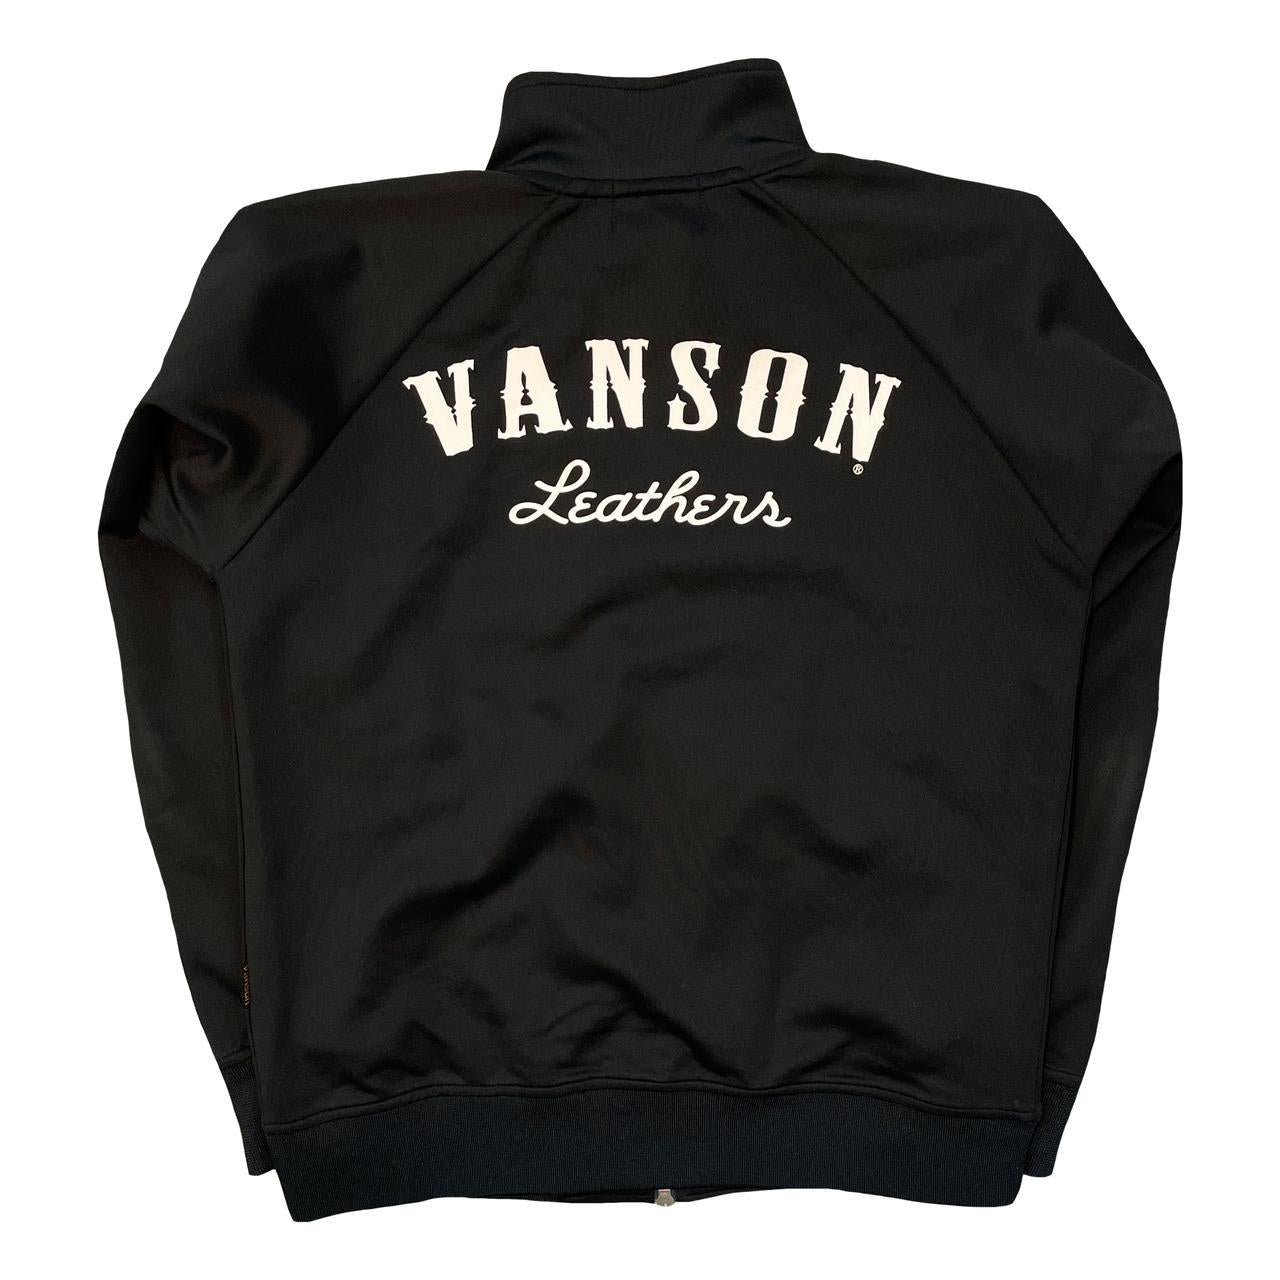 Vanson Skeleton Track Top